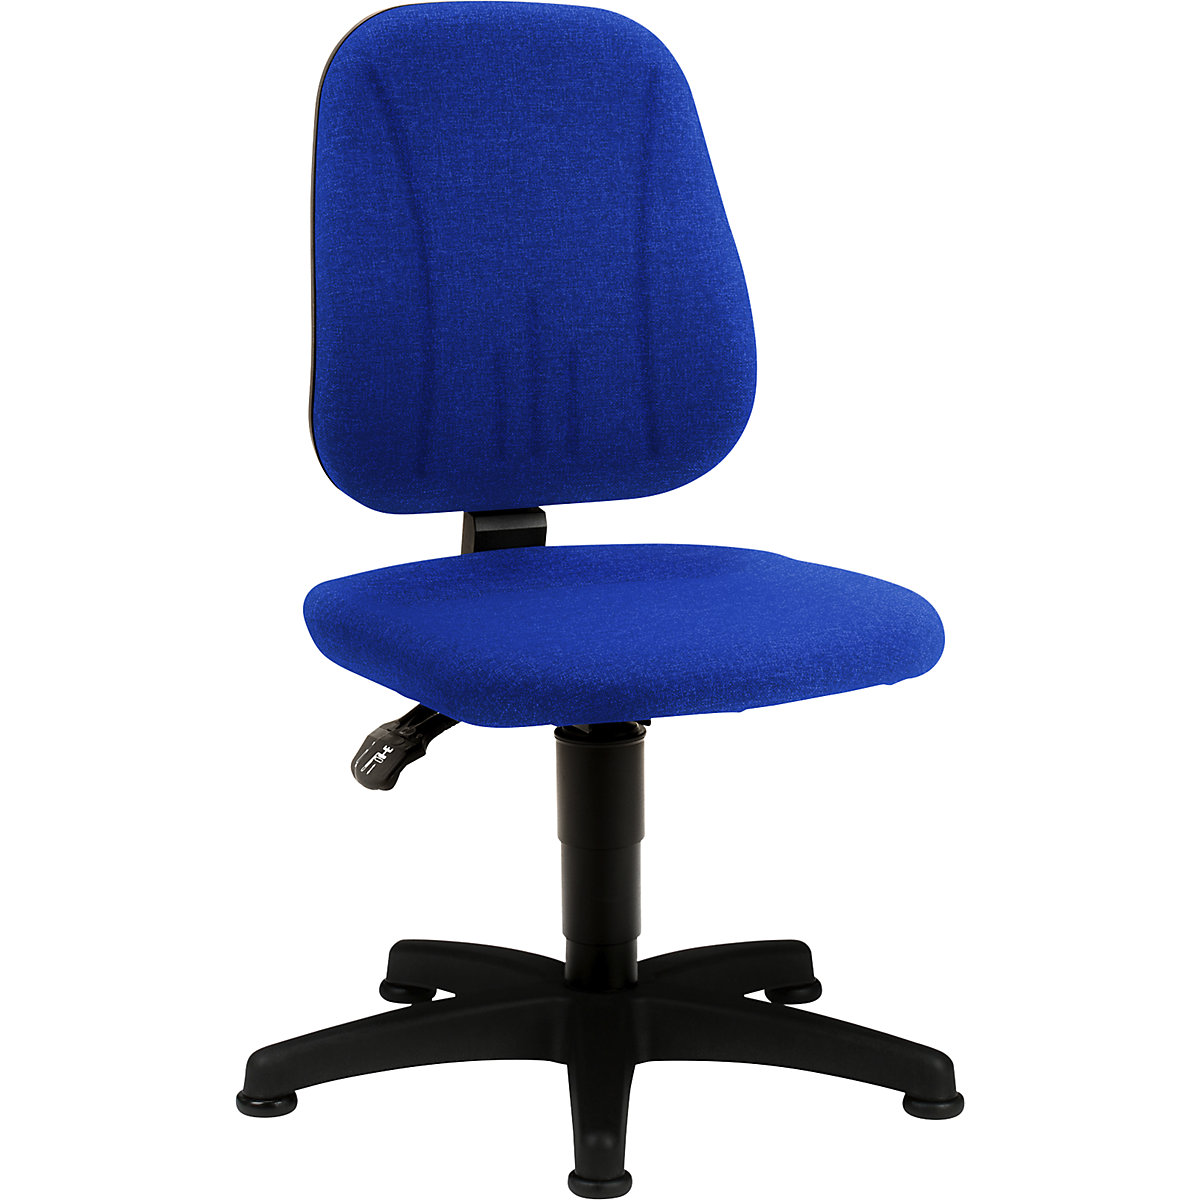 Pracovní otočná židle – bimos, s přestavováním výšky plynovým pístem, látkový potah, modrá, s podlahovými patkami-10